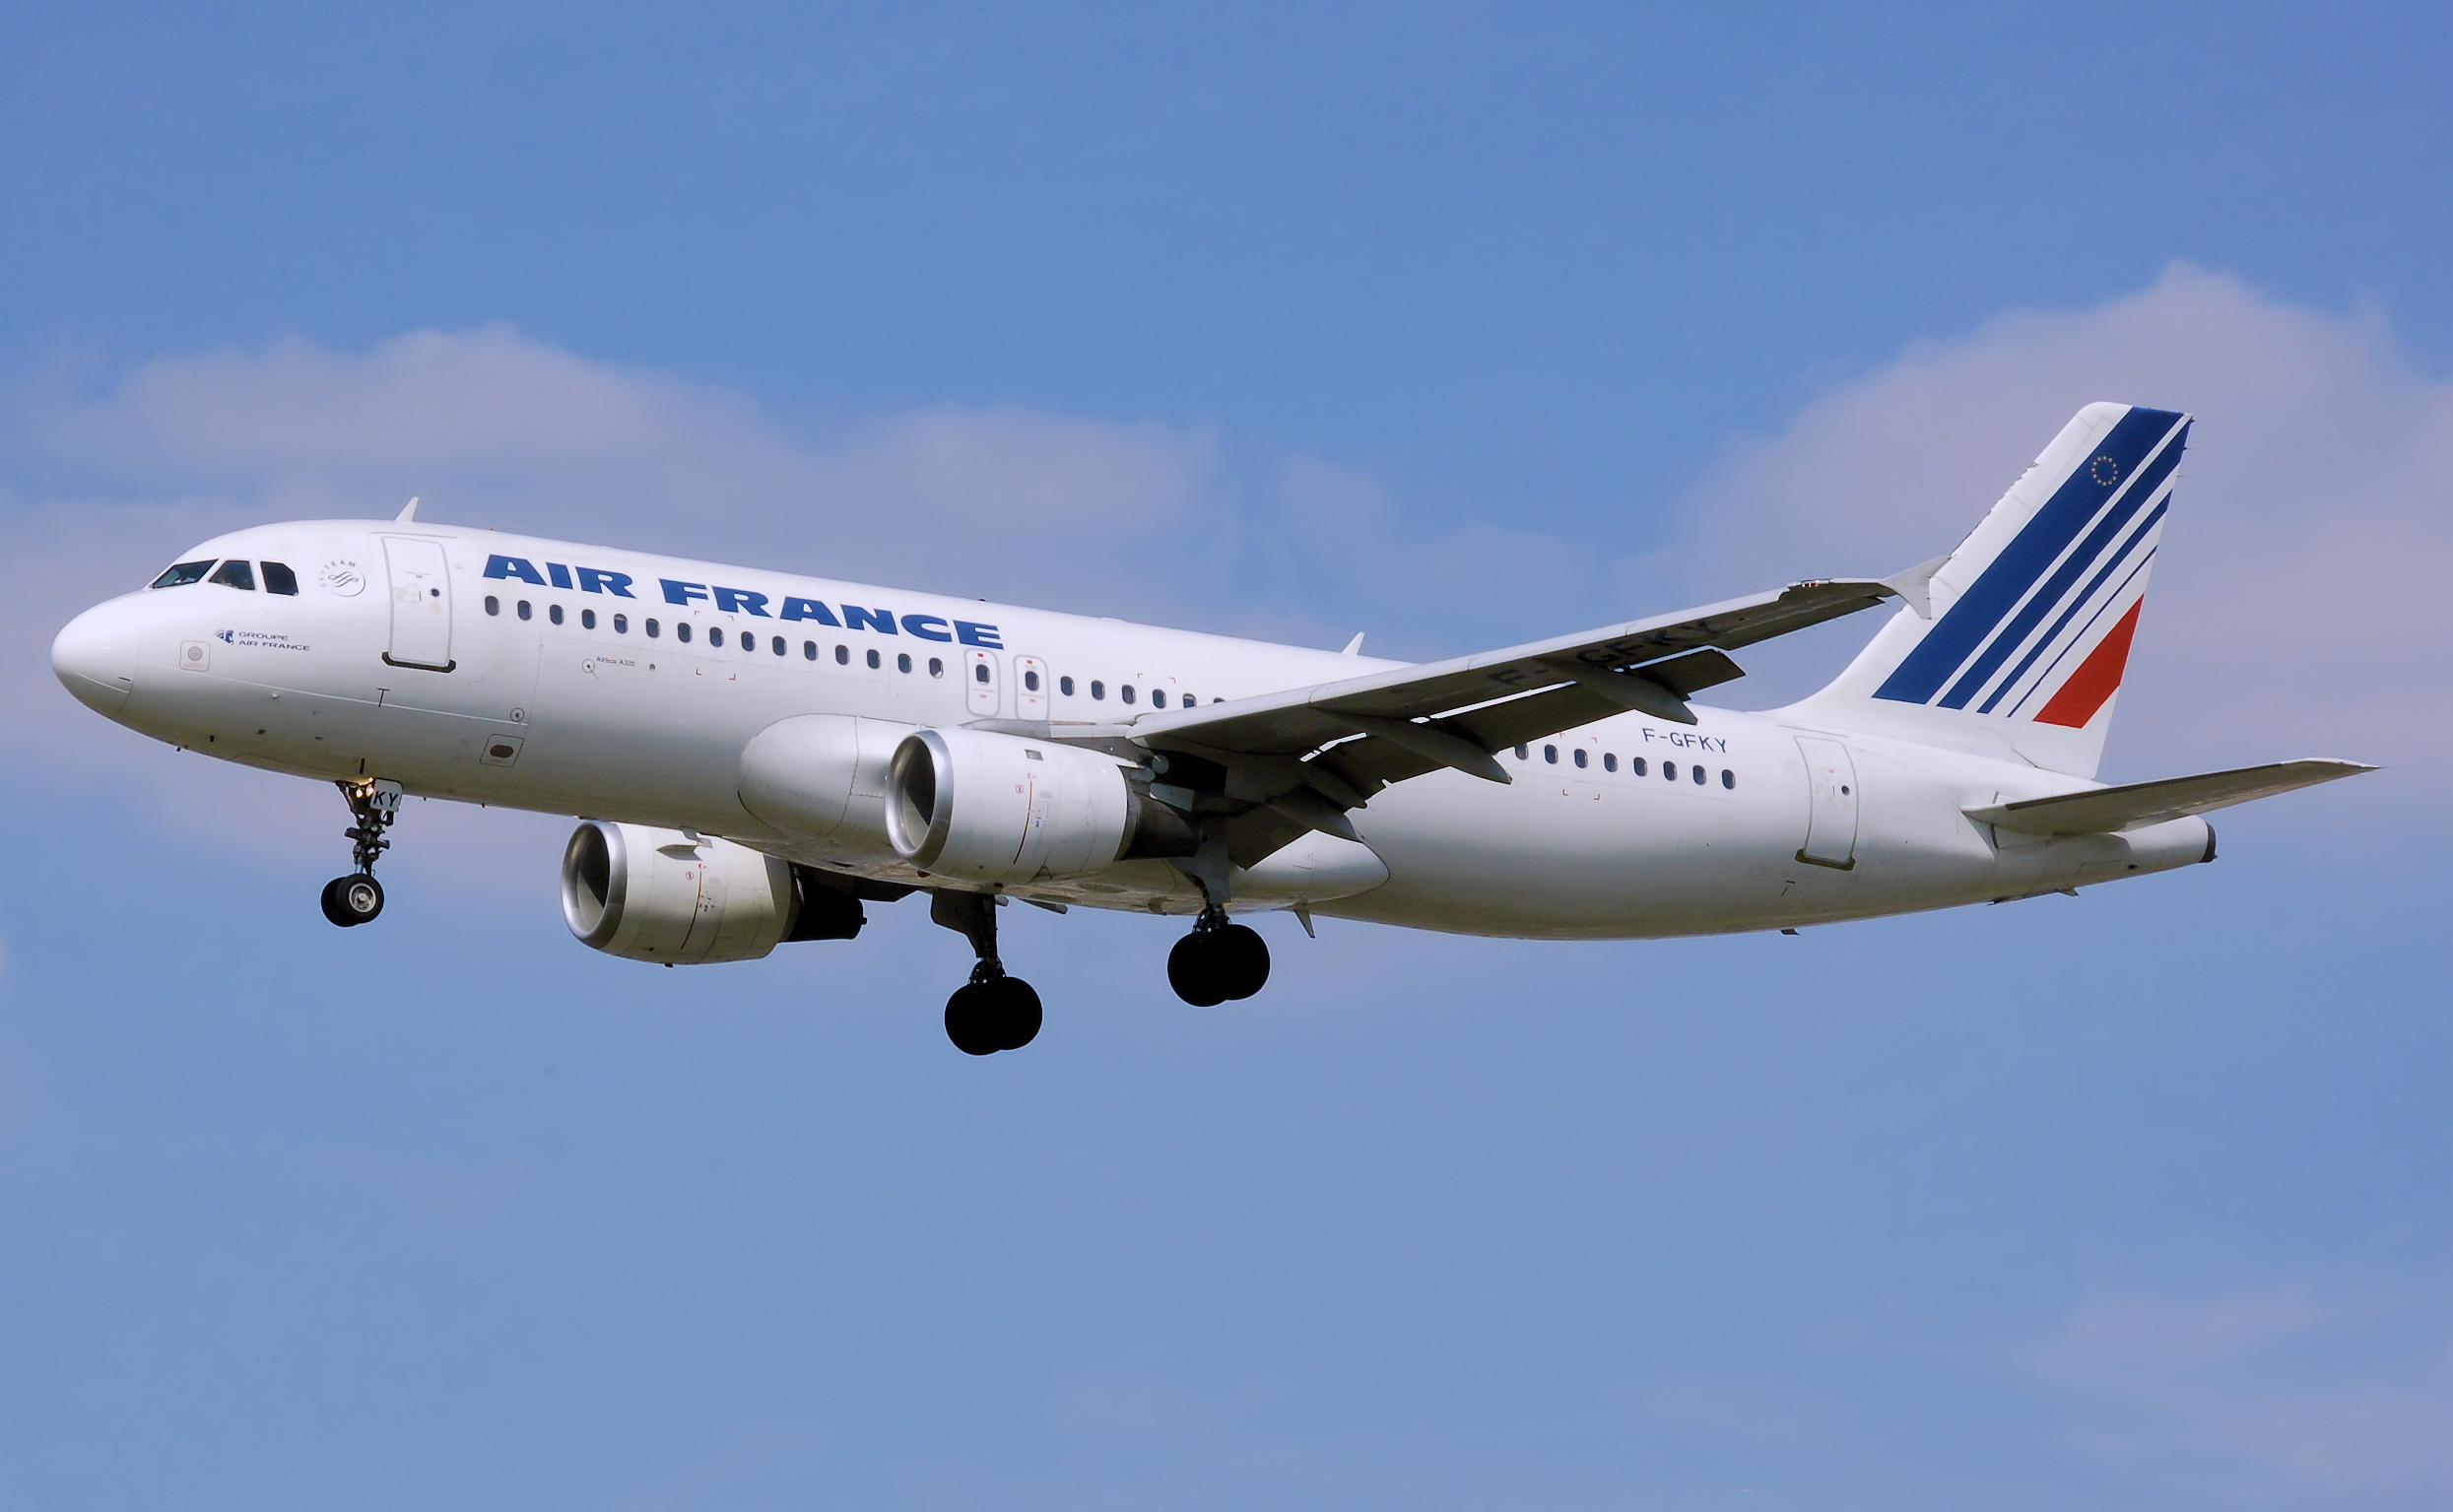 В Екатеринбурге из-за отказа двигателя совершает аварийную посадку самолет Air France